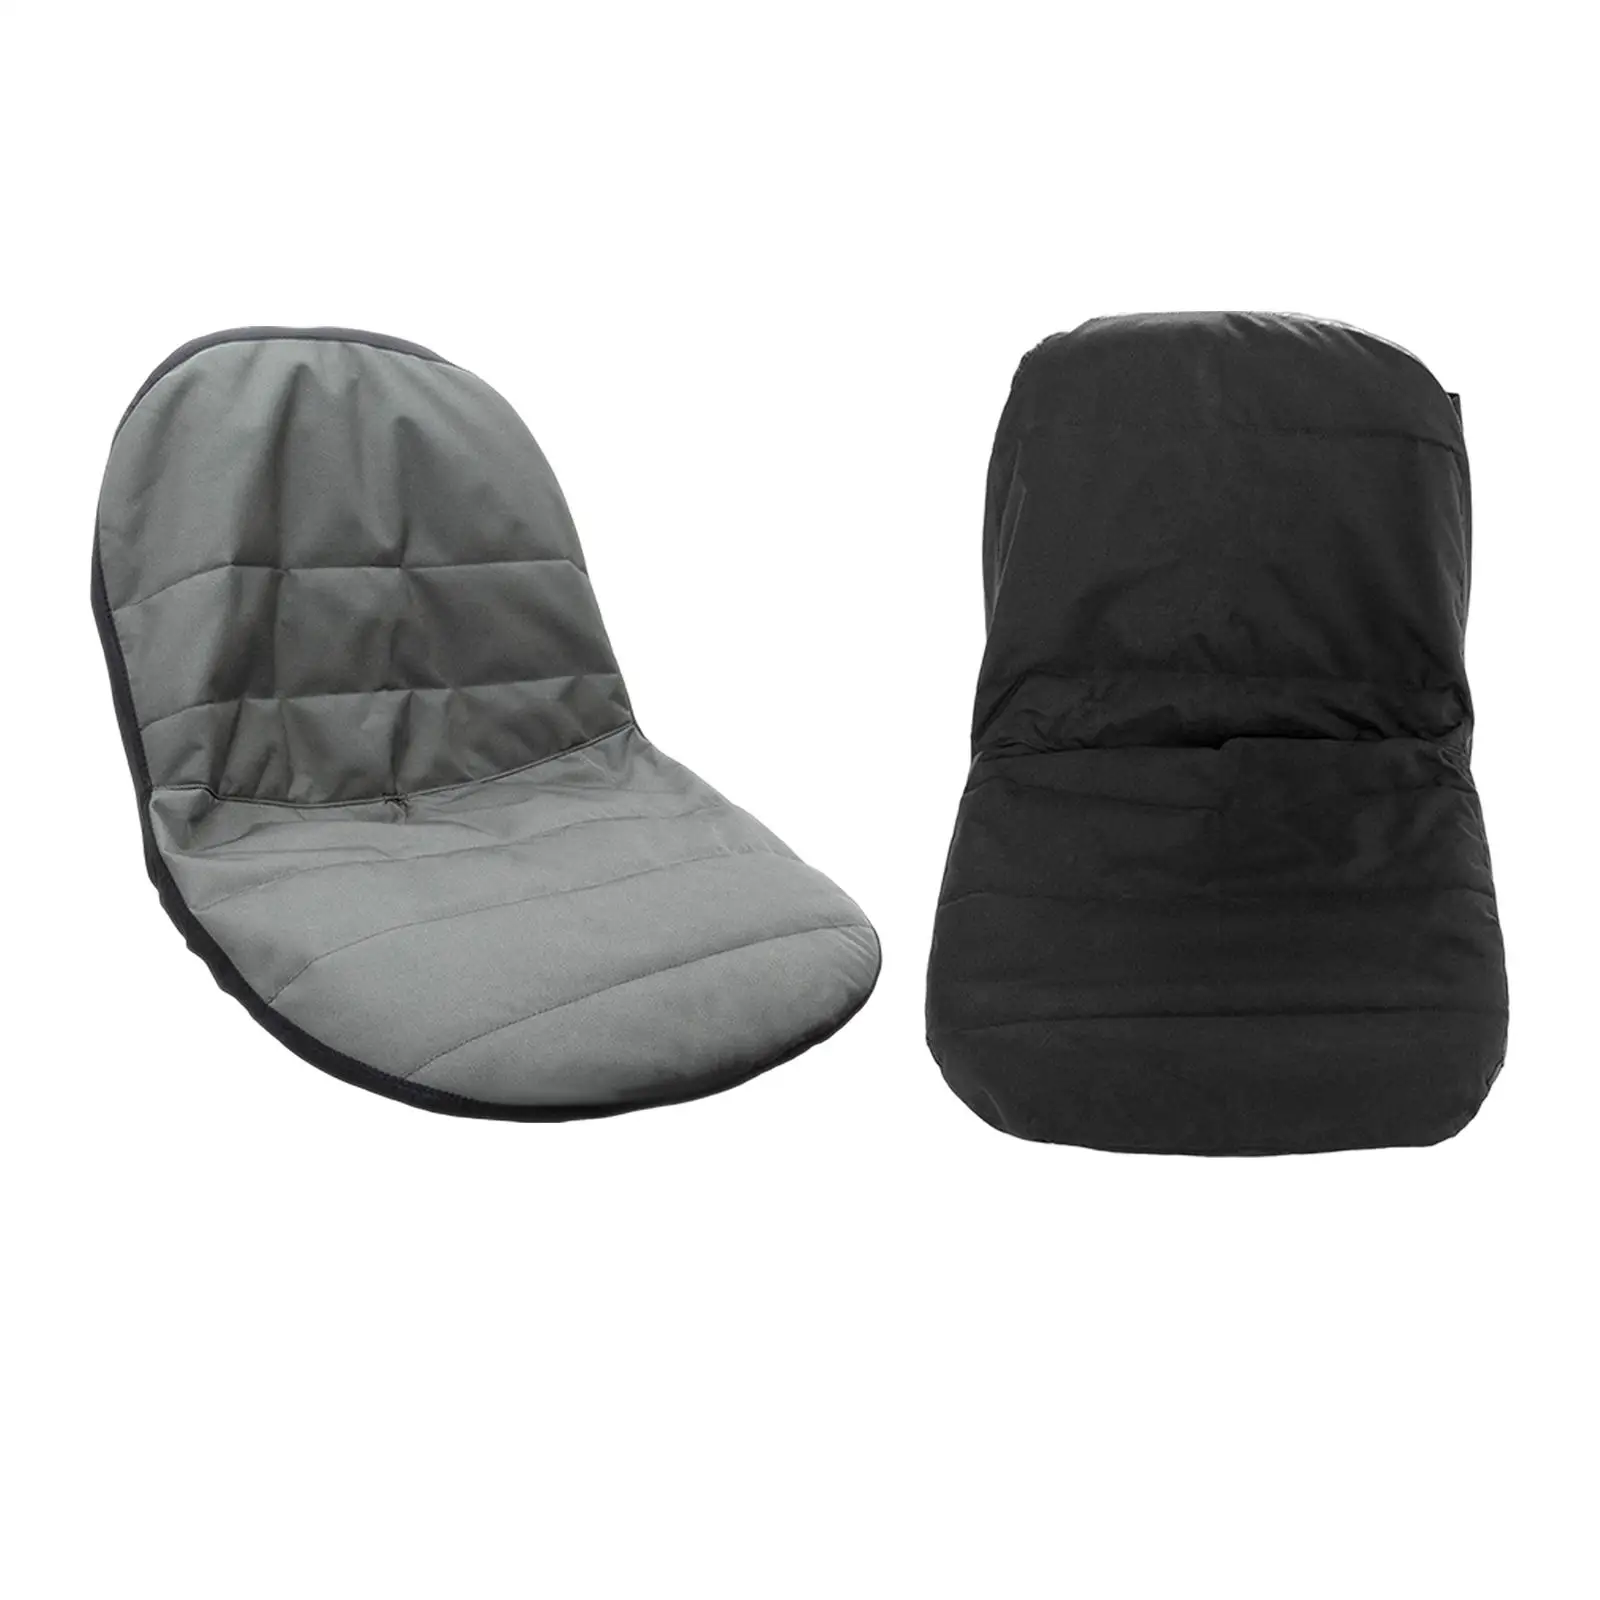 Seat cover impermeável prático com bolsos, macio para Seat